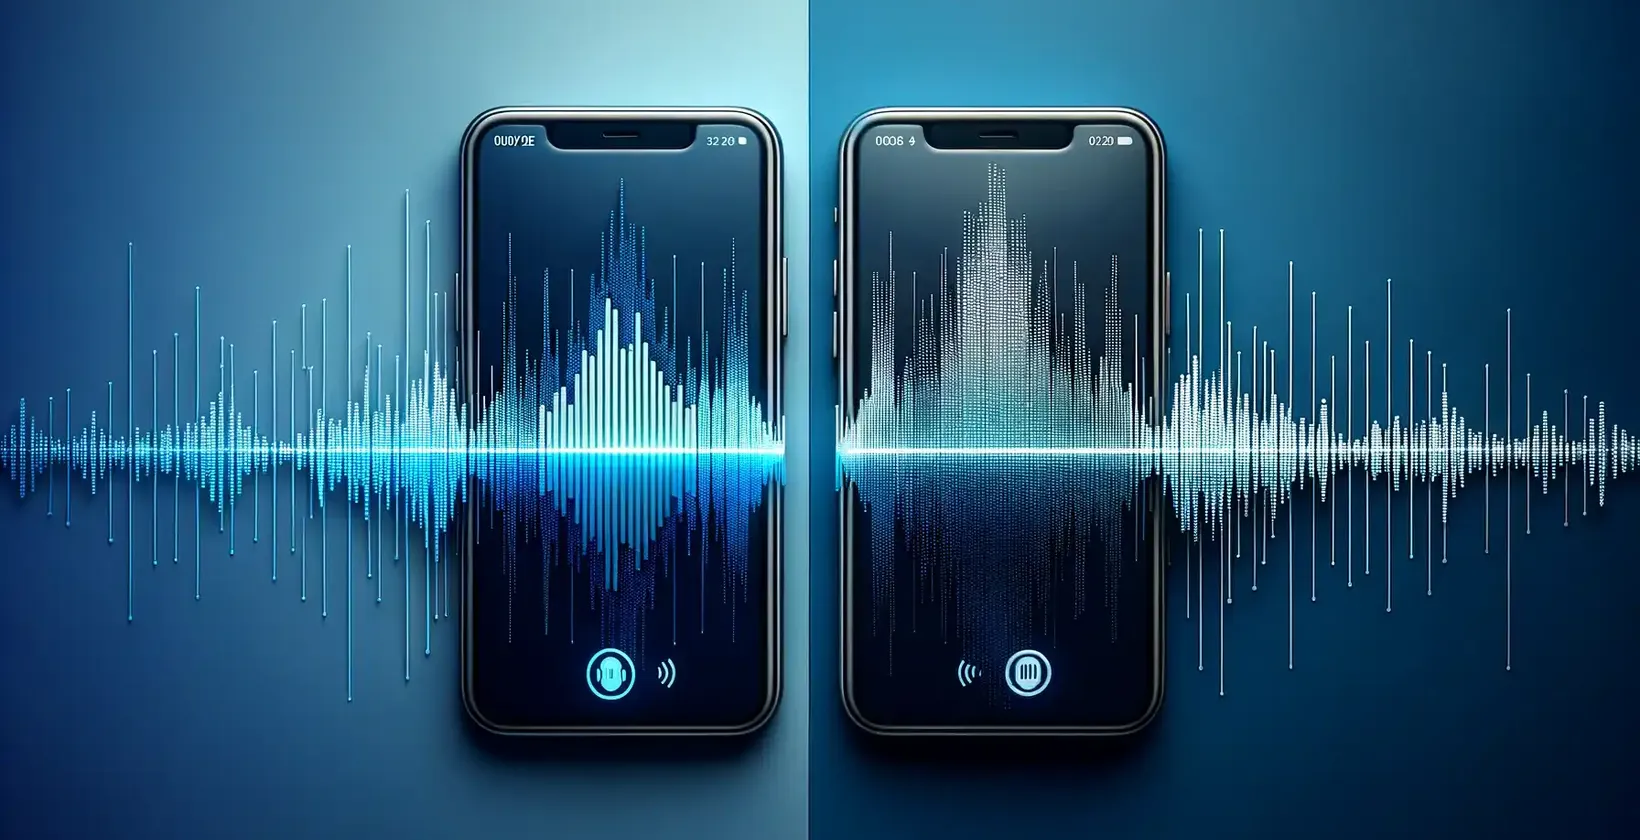 Două smartphone-uri moderne, una lângă alta, pe un fundal albastru în gradient